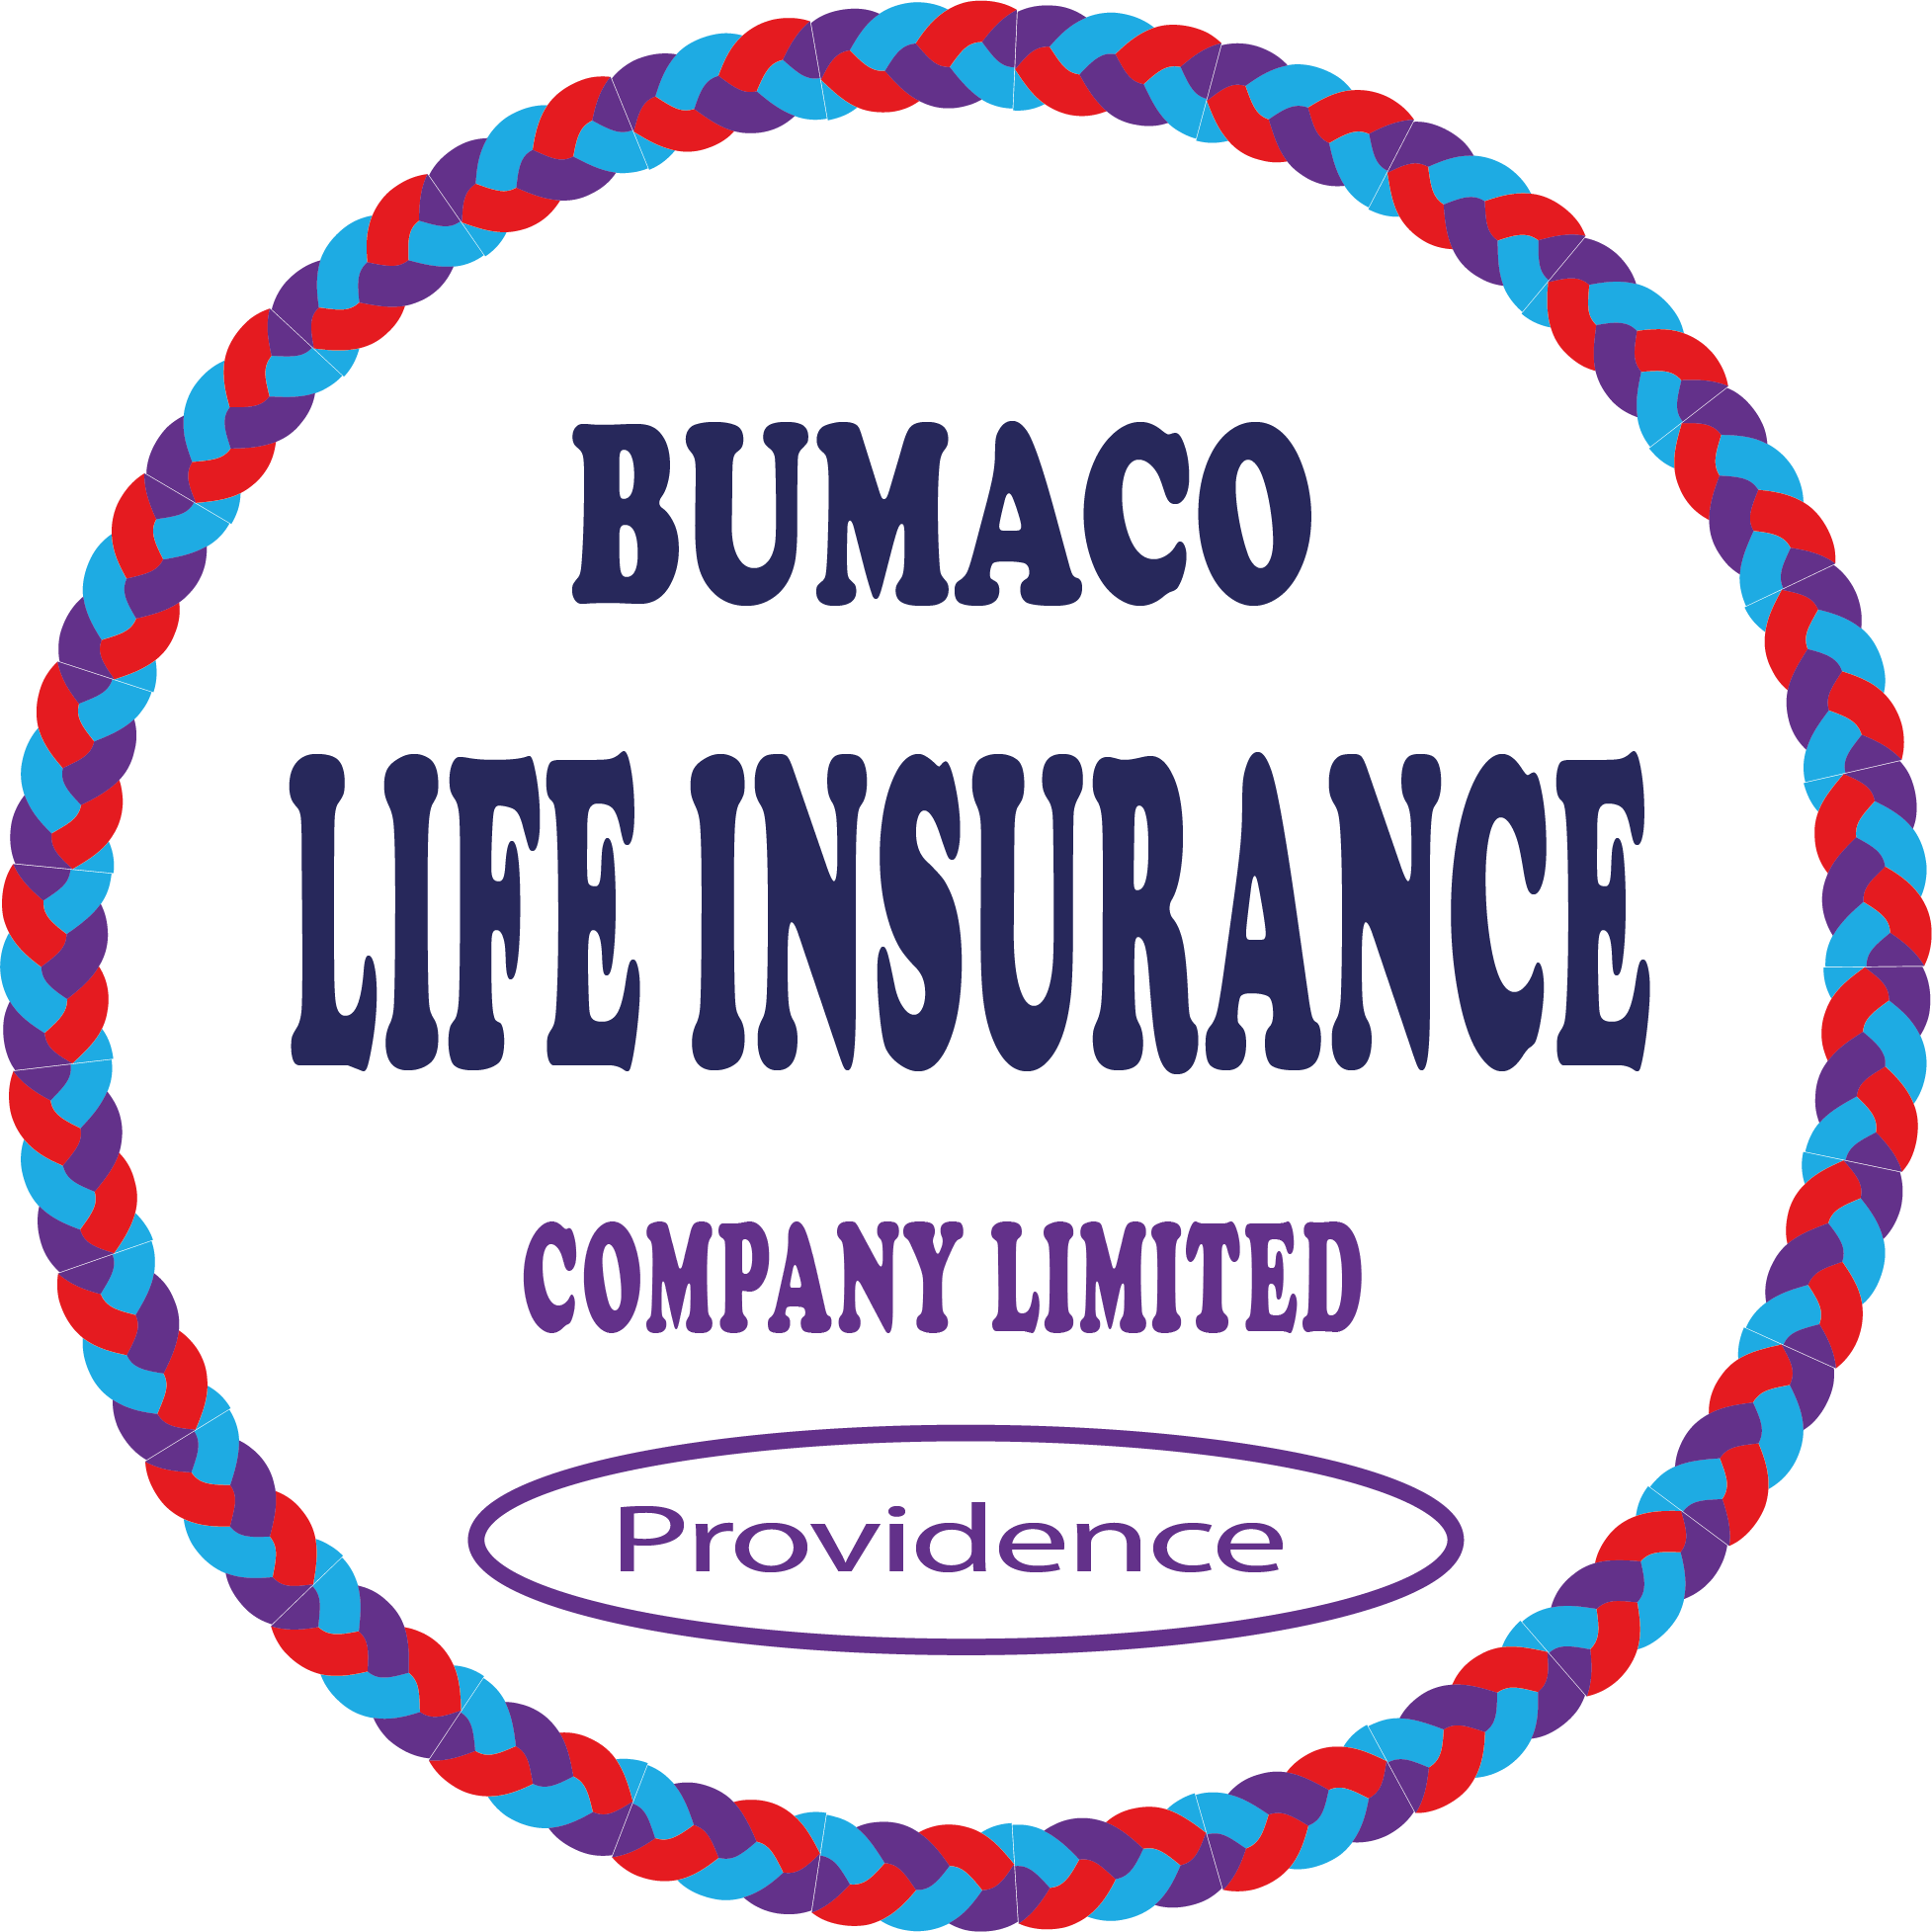 Bumaco Life Insurance